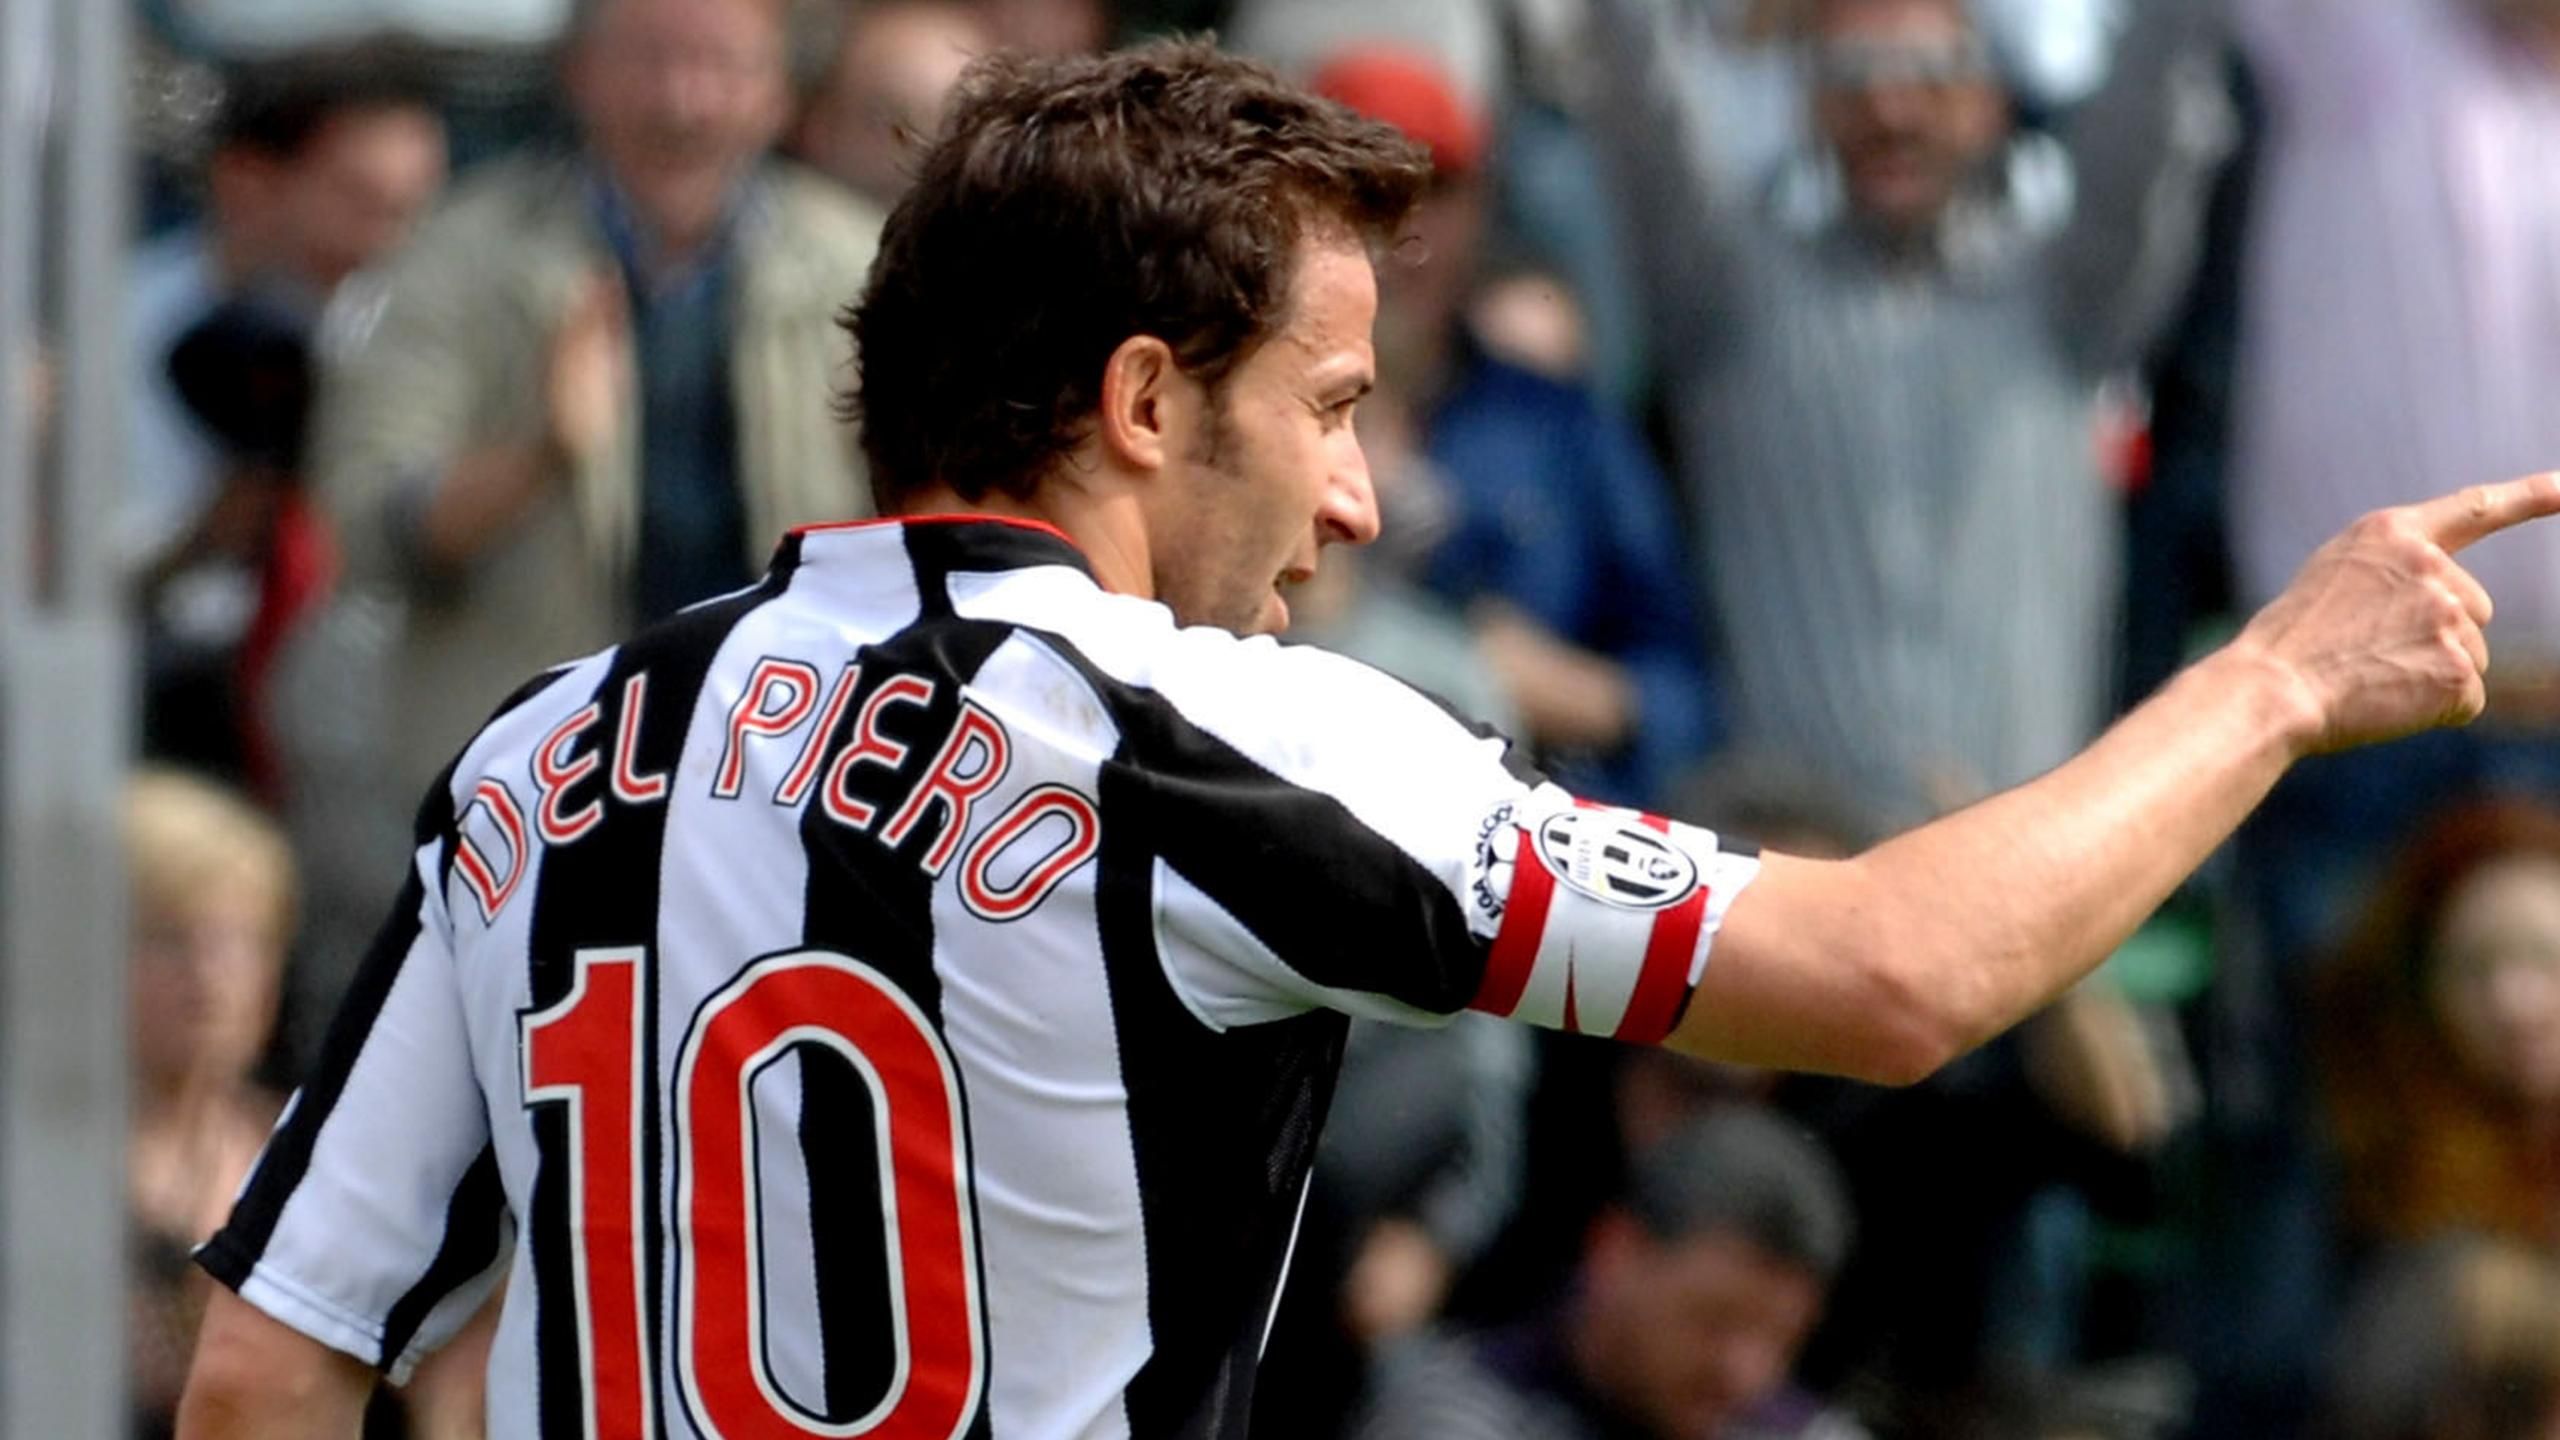 Del Piero backed for Italy - Eurosport